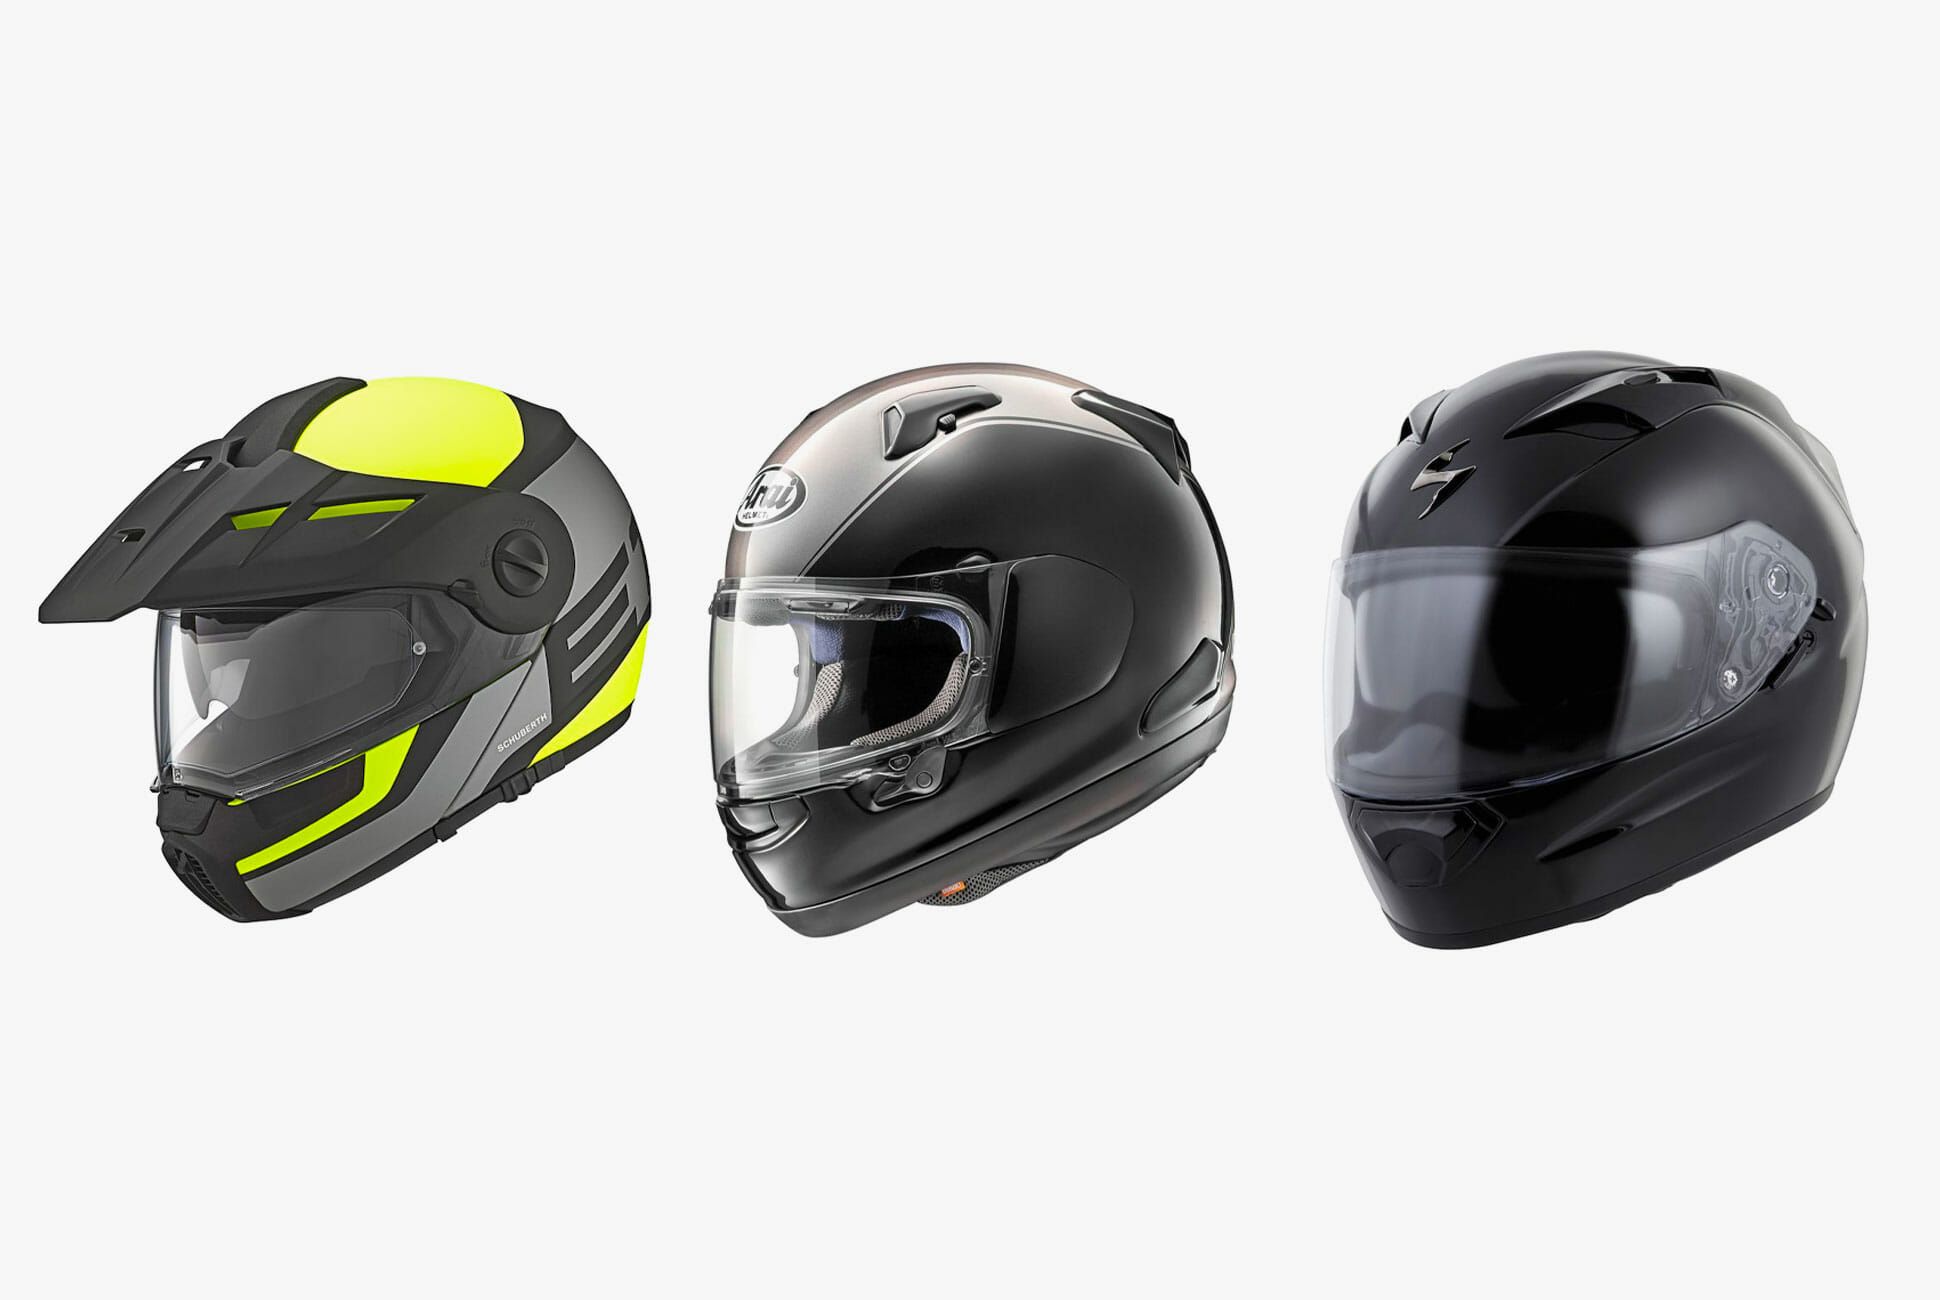 bargain motorcycle helmets